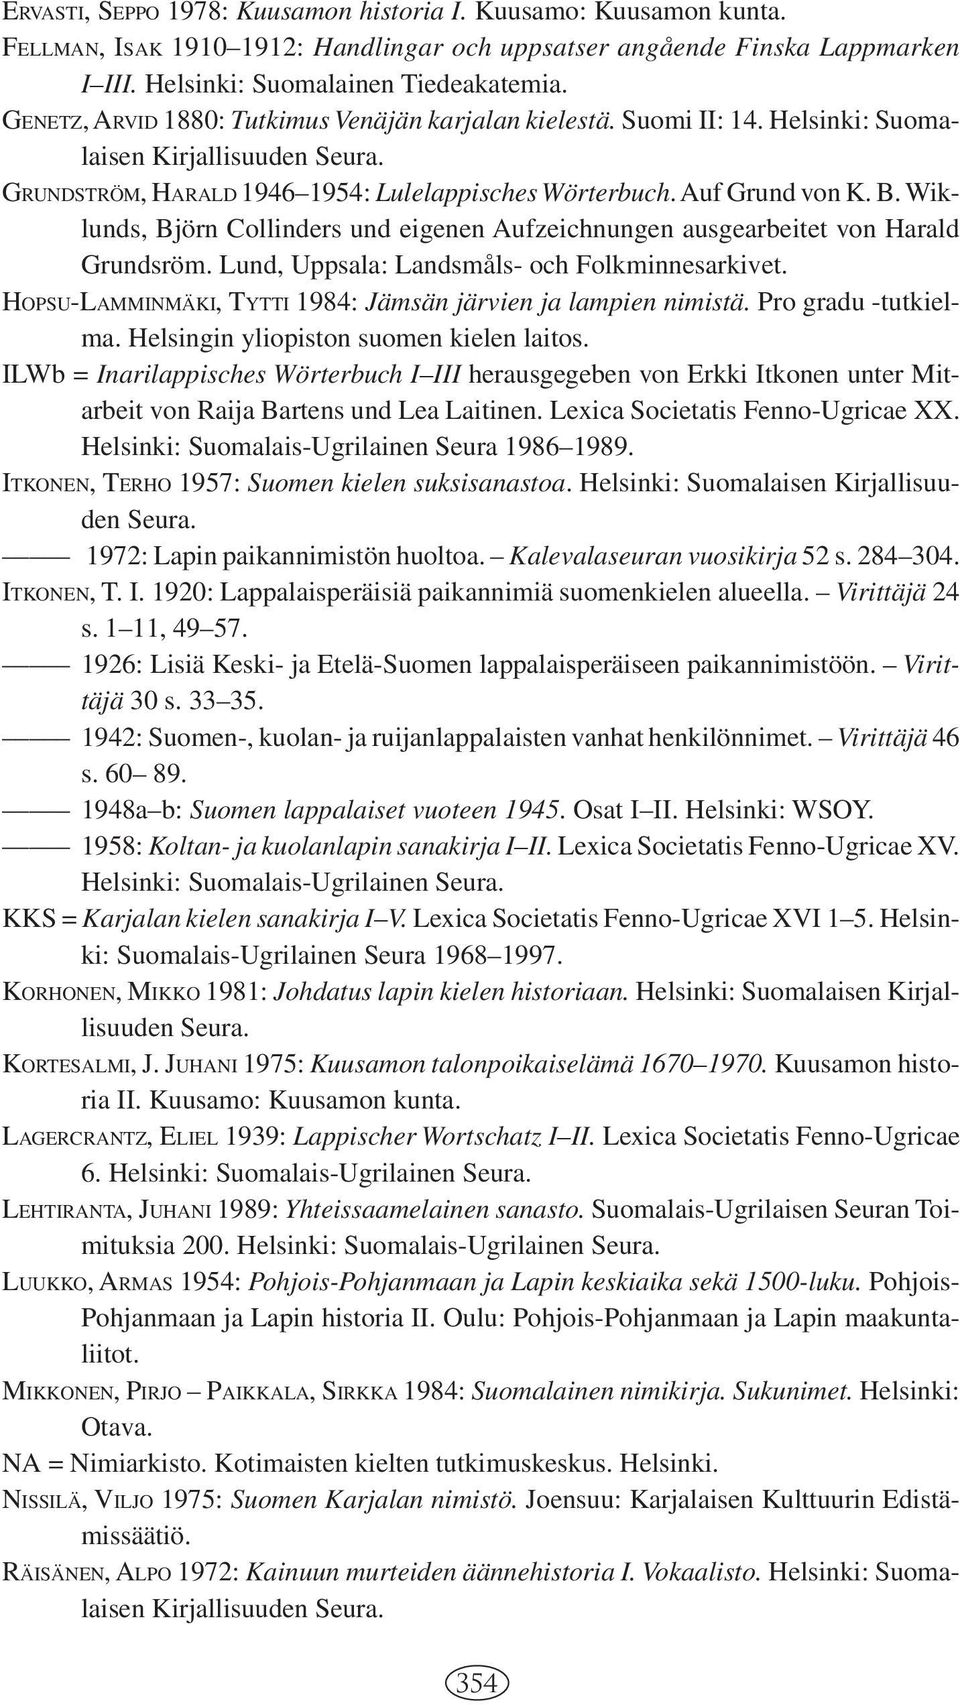 Wiklunds, Björn Collinders und eigenen Aufzeichnungen ausgearbeitet von Harald Grundsröm. Lund, Uppsala: Landsmåls- och Folkminnesarkivet.